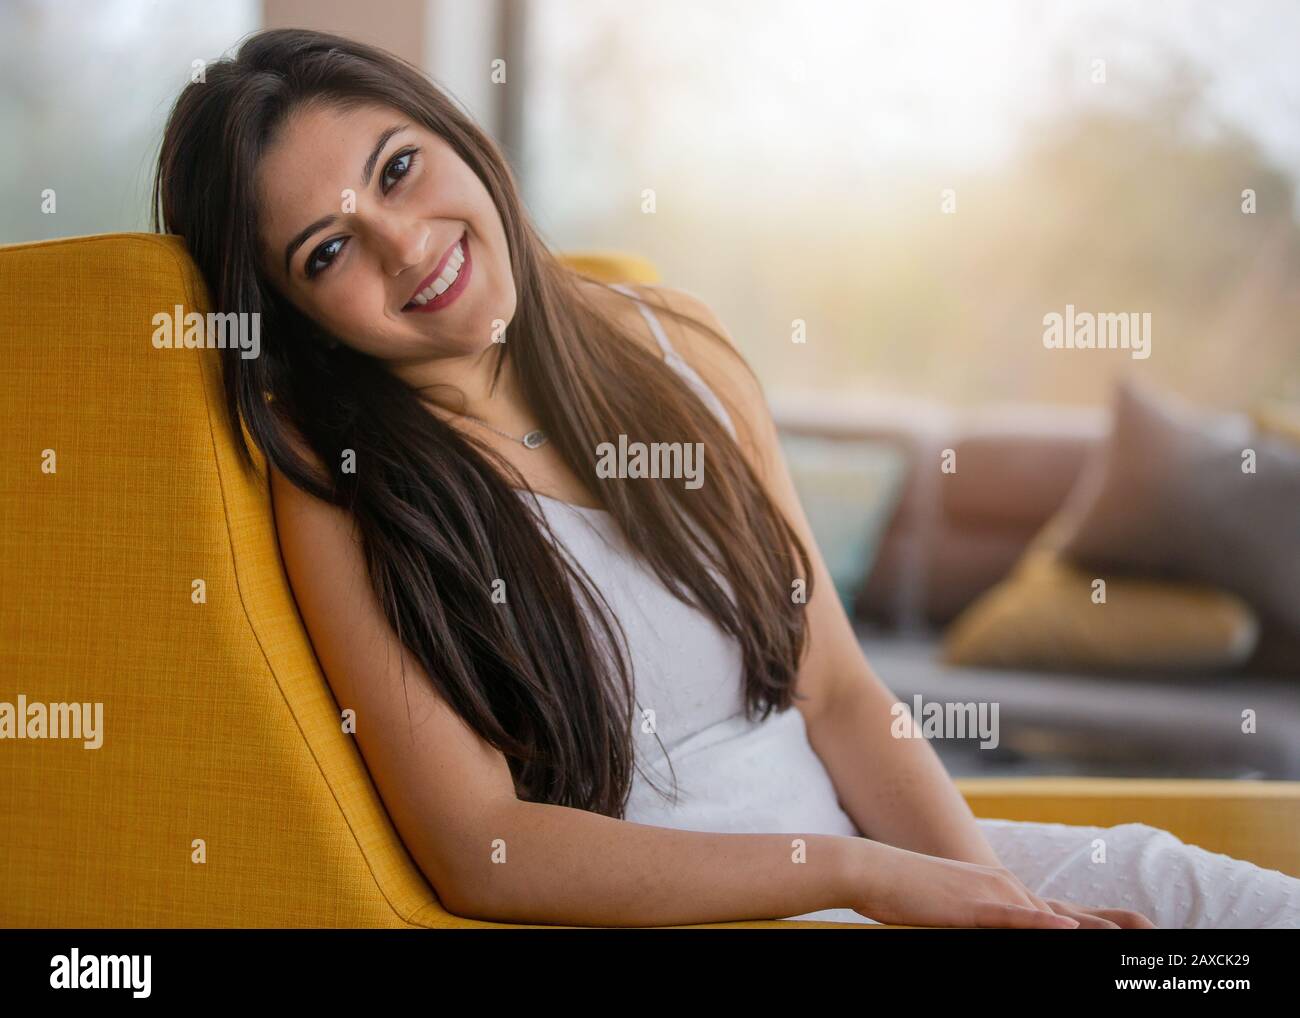 Bella casa vita stile di vita ritratto di un indiano, latina, donna ispanica, naturale, amichevole e affascinante luminoso sorriso con denti perfetti Foto Stock